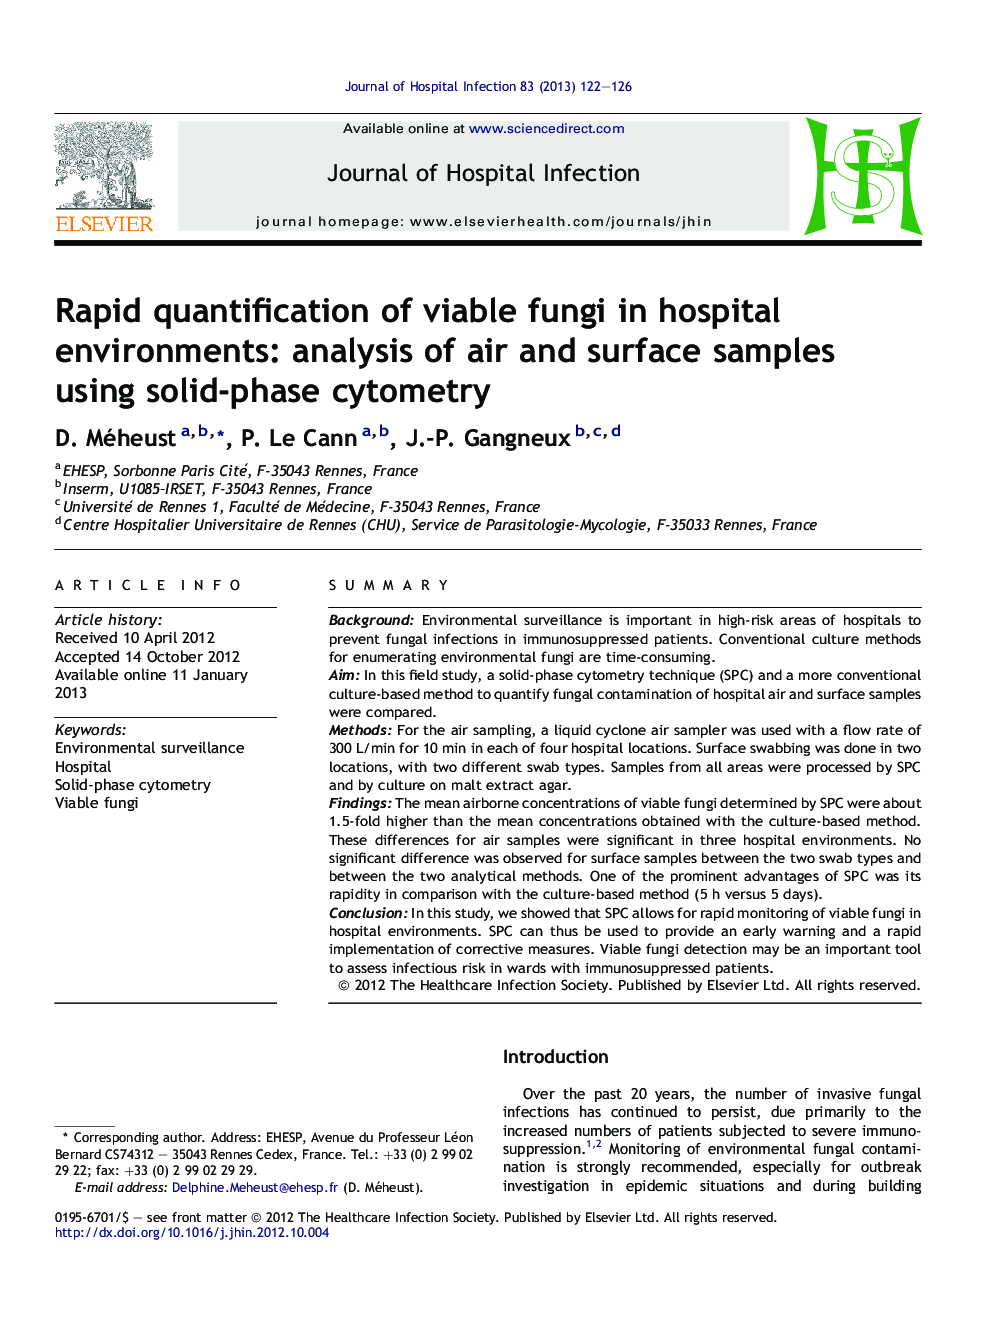 اندازه گیری سریع قارچ های حیاتی در محیط های بیمارستان: تجزیه و تحلیل نمونه های هوا و سطح با استفاده از سی تیومتر فاز جامد 